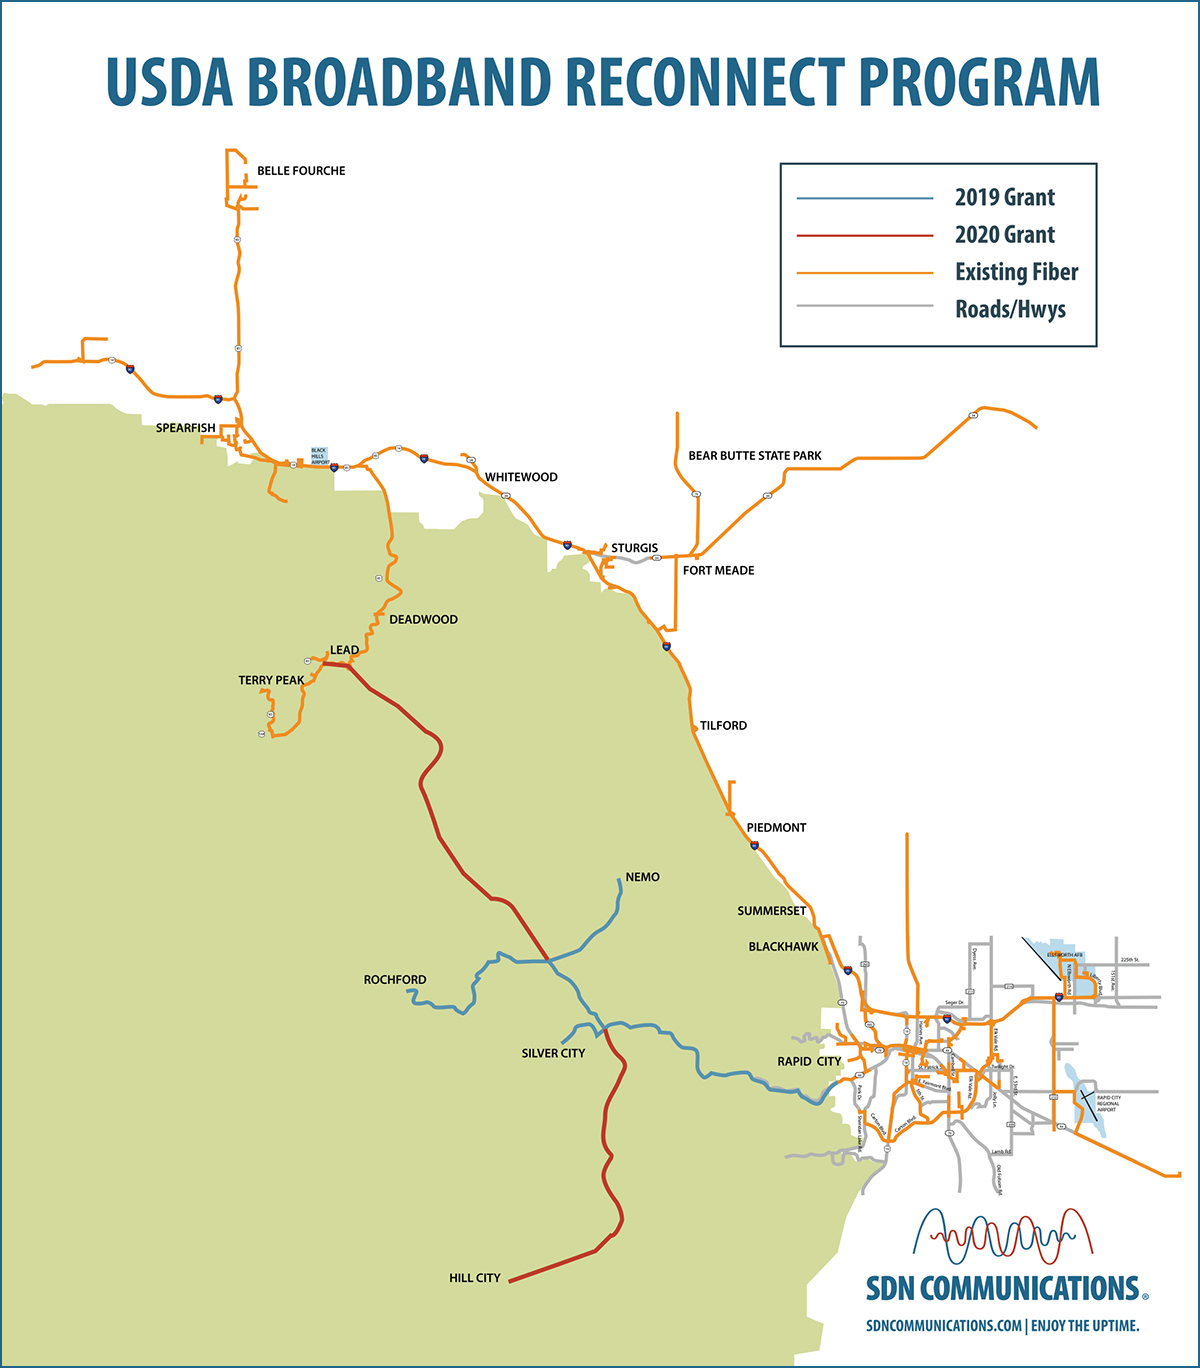 ReConnect 2 map showing fiber lines between communities